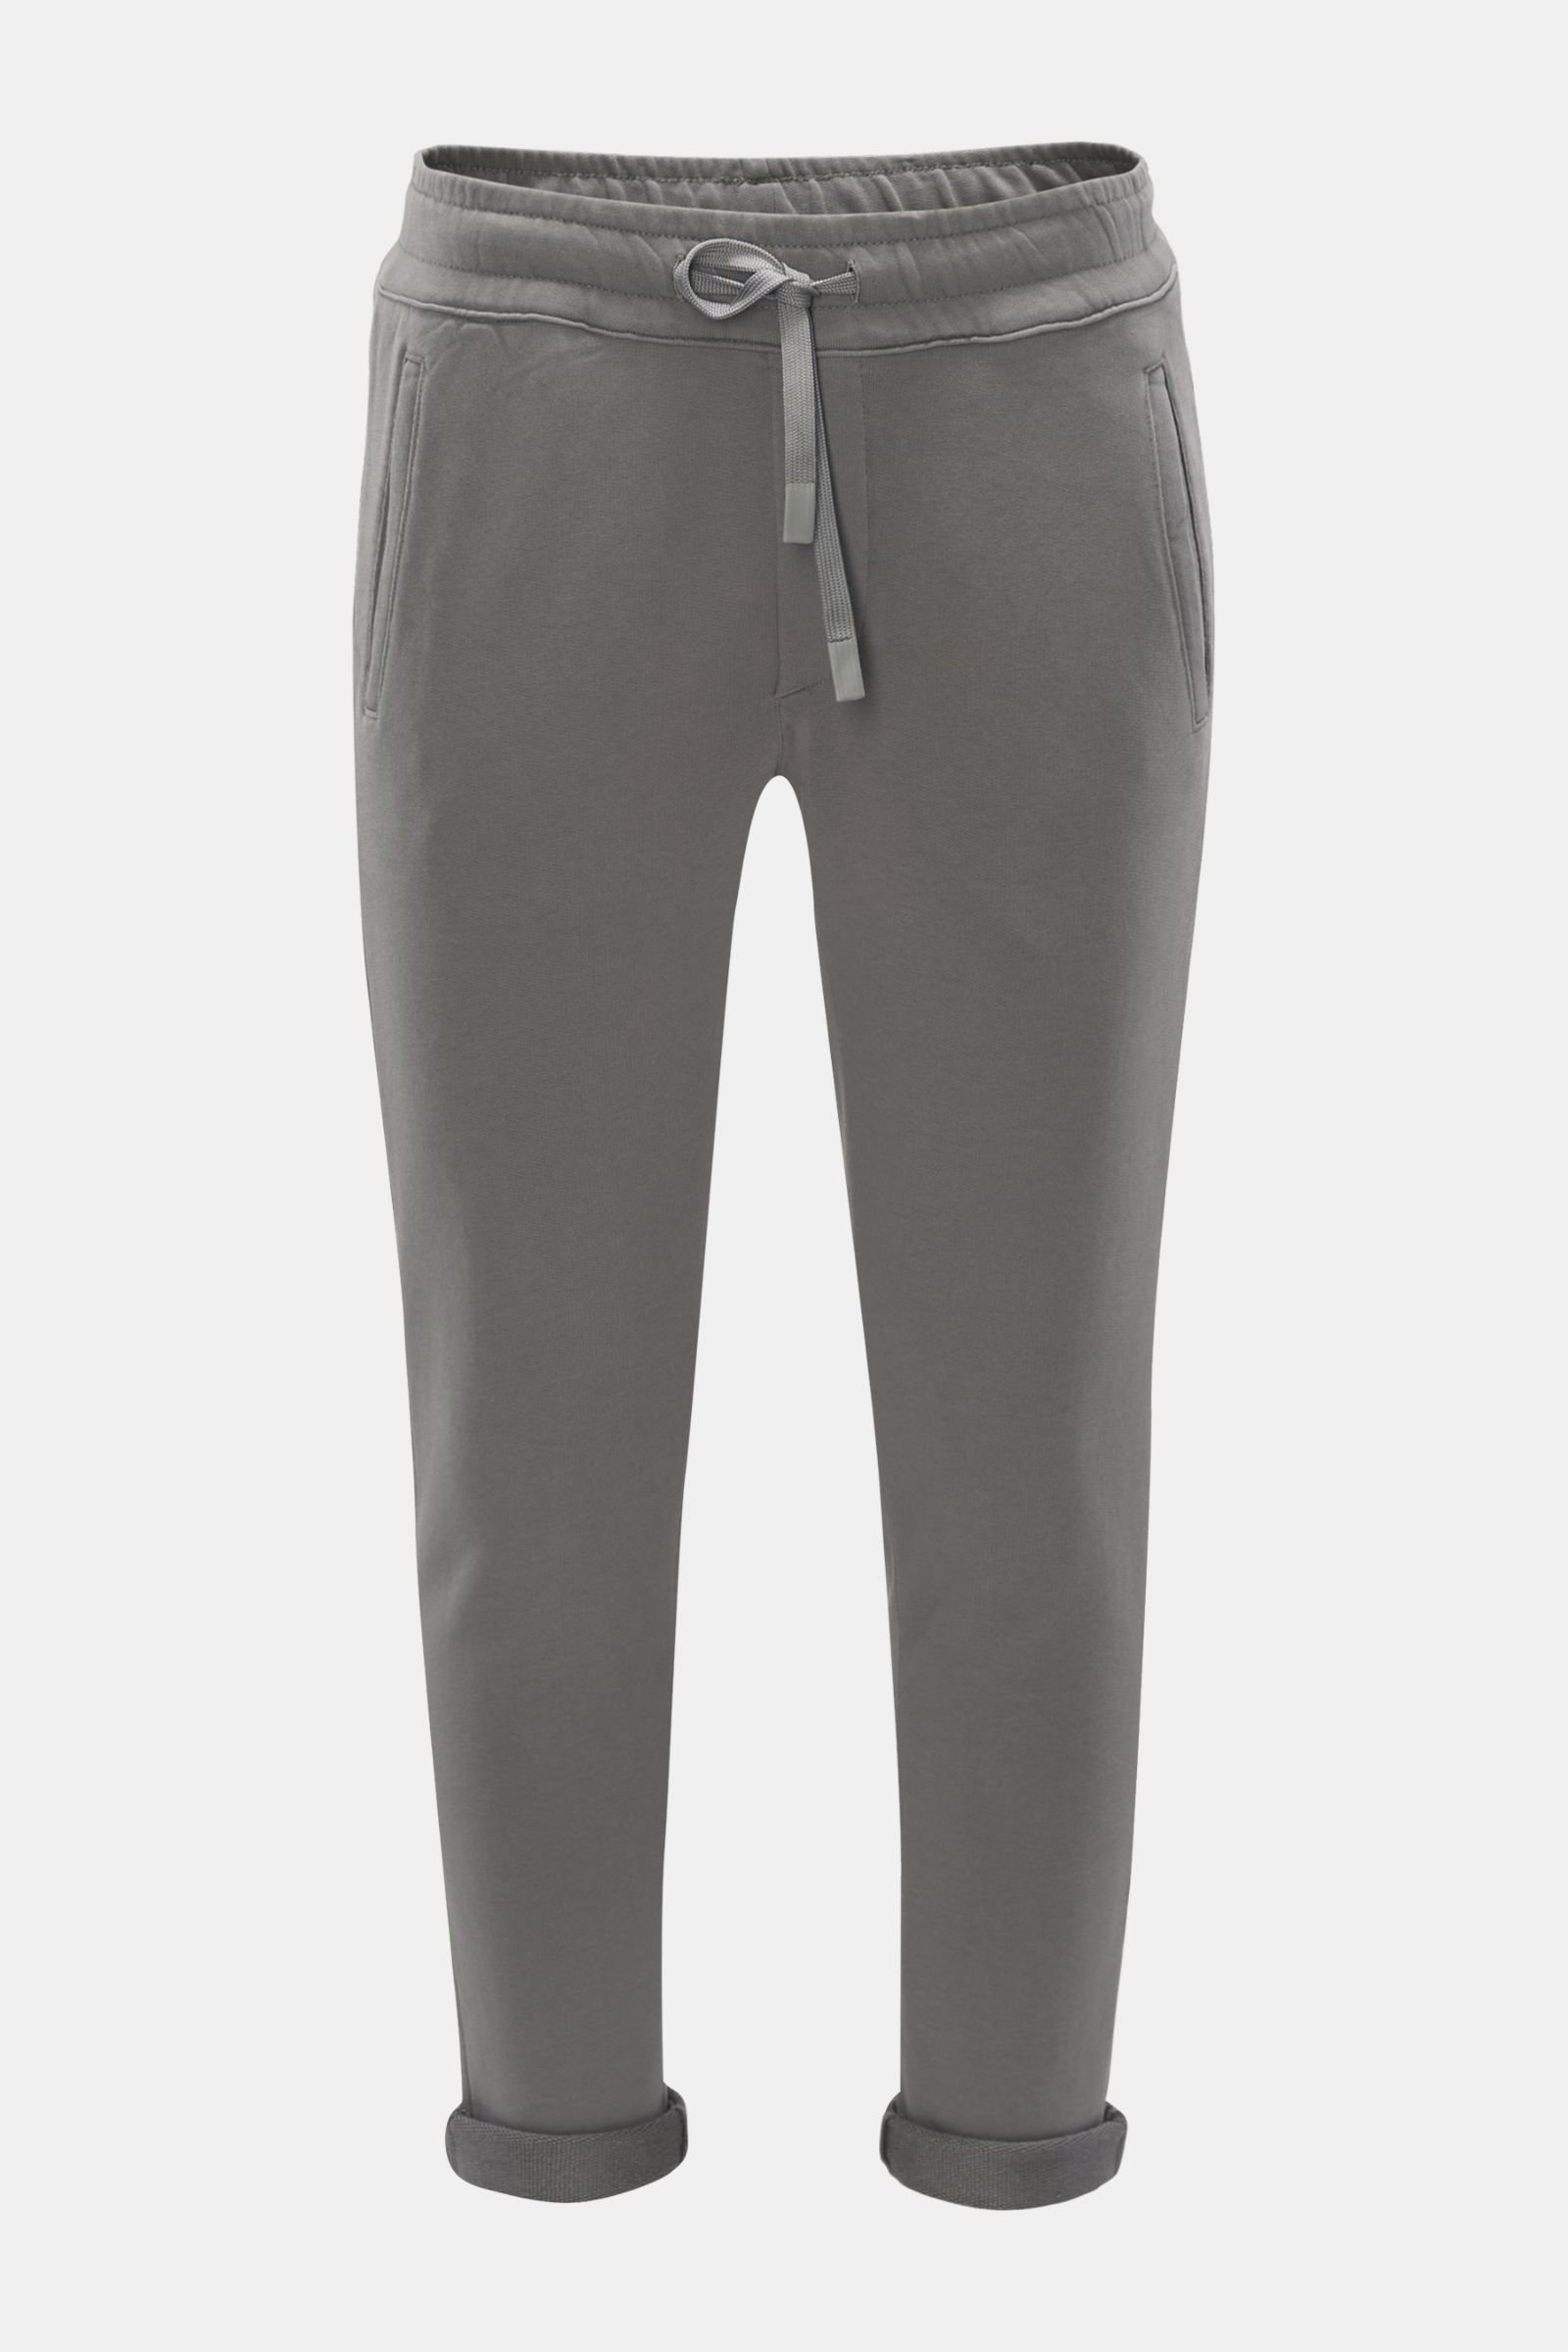 Sweat pants grey